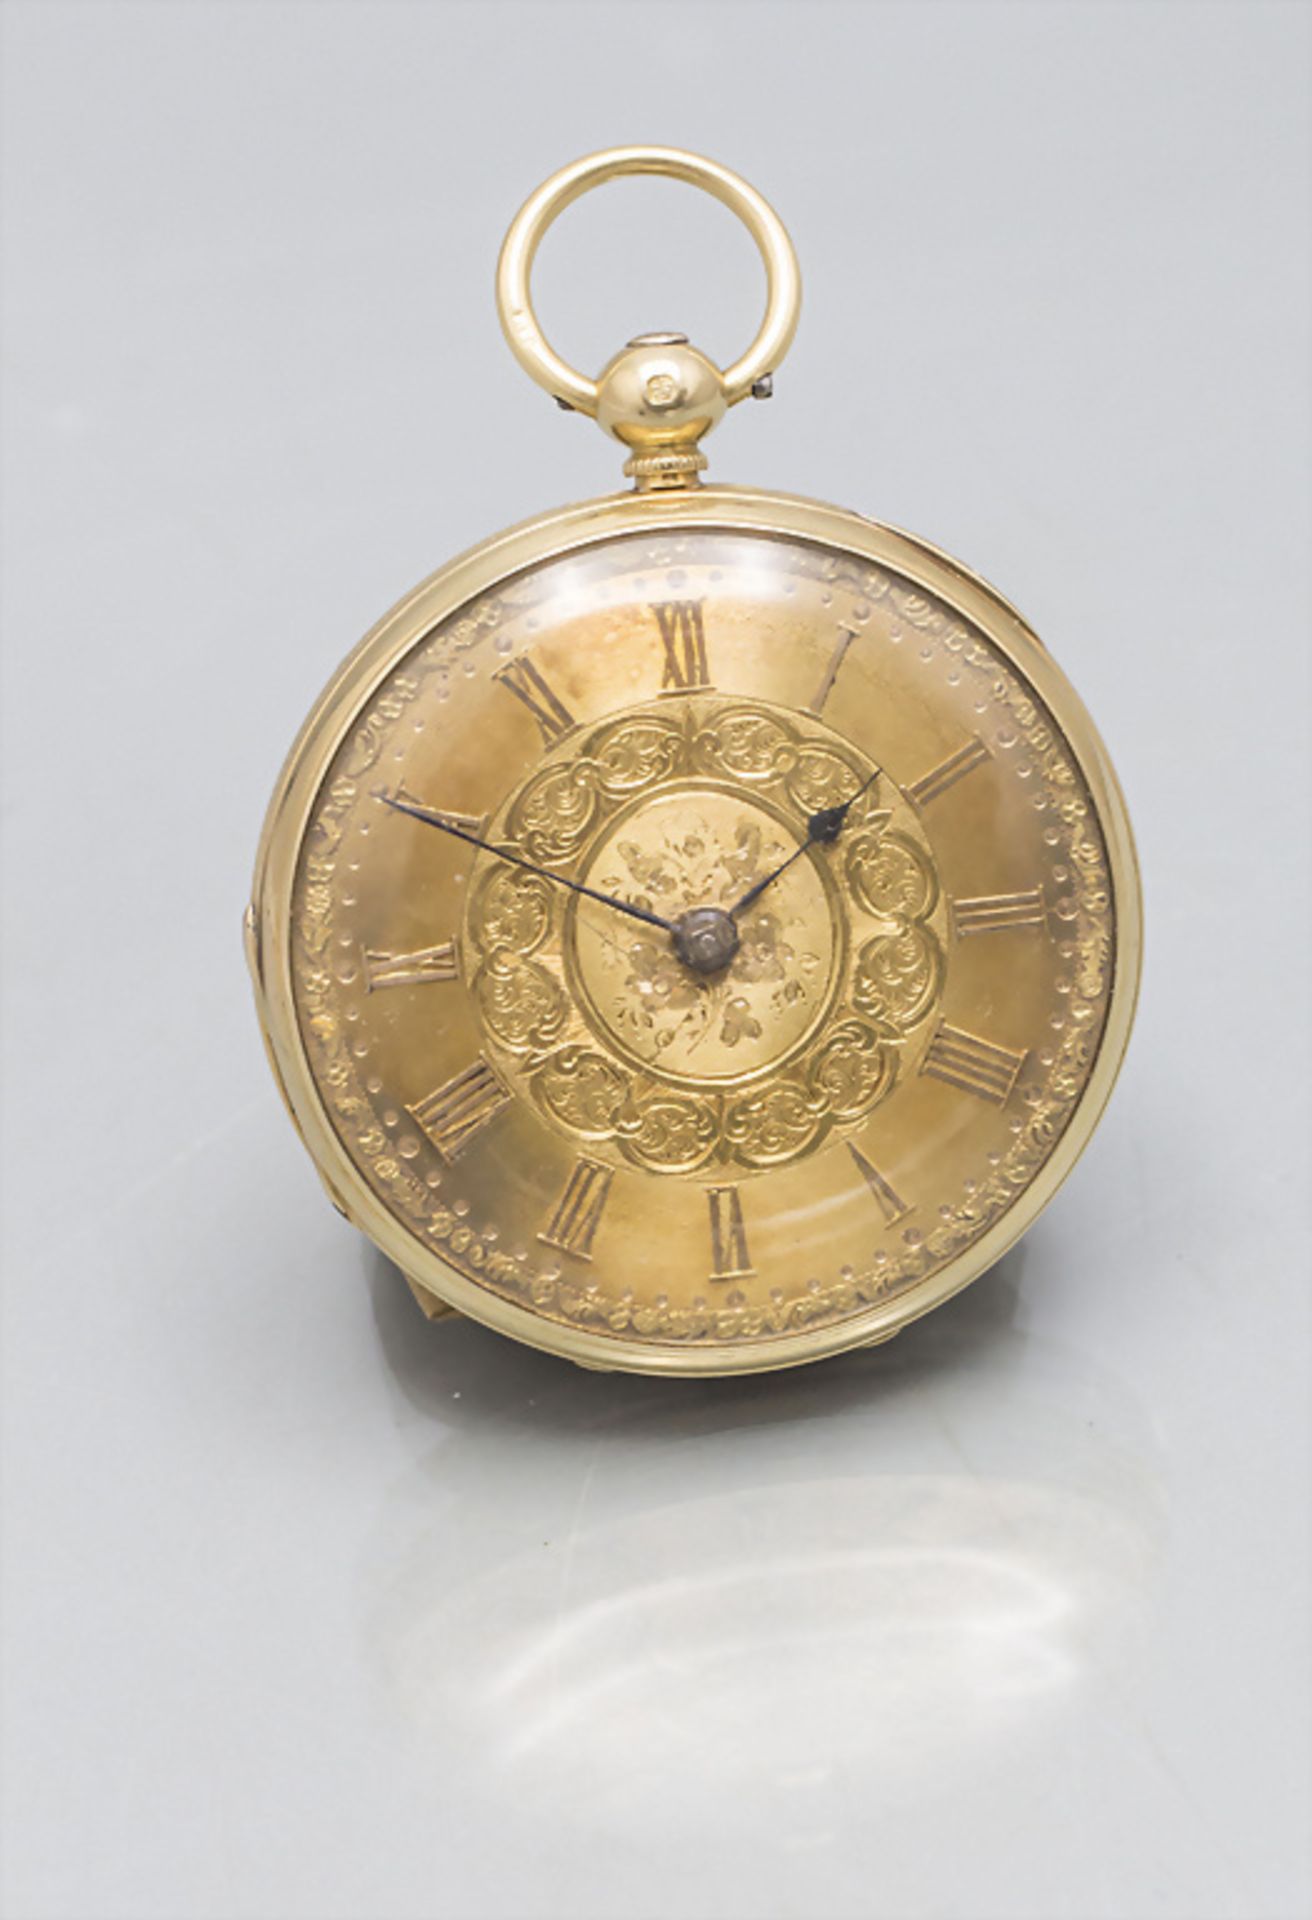 Offene Taschenuhr / An 18 ct gold open face pocket watch, England, um 1900